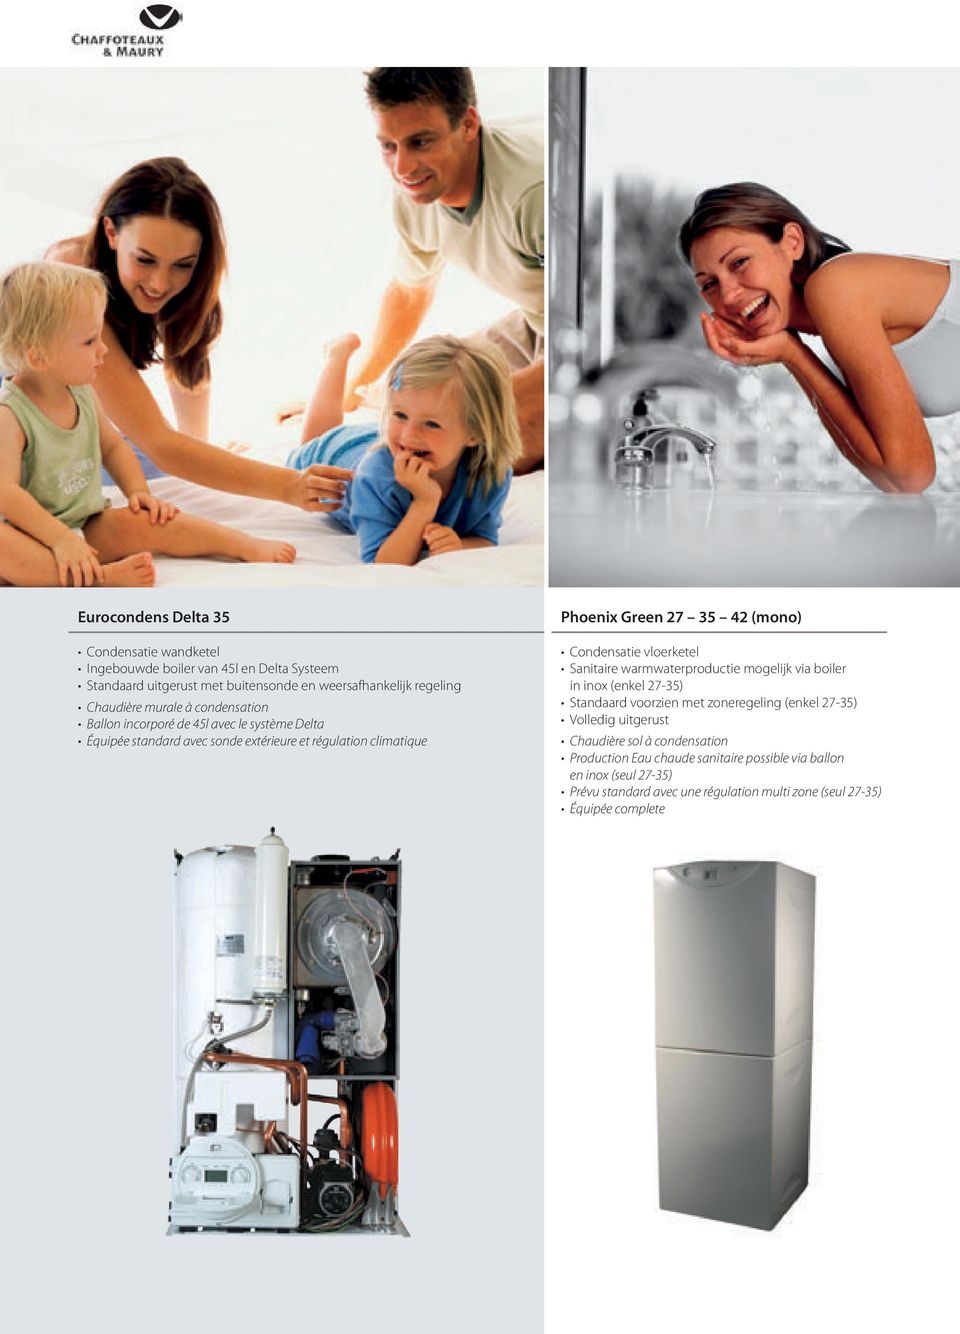 Condensatie vloerketel Sanitaire warmwaterproductie mogelijk via boiler in inox (enkel 27-35) Standaard voorzien met zoneregeling (enkel 27-35) Volledig uitgerust